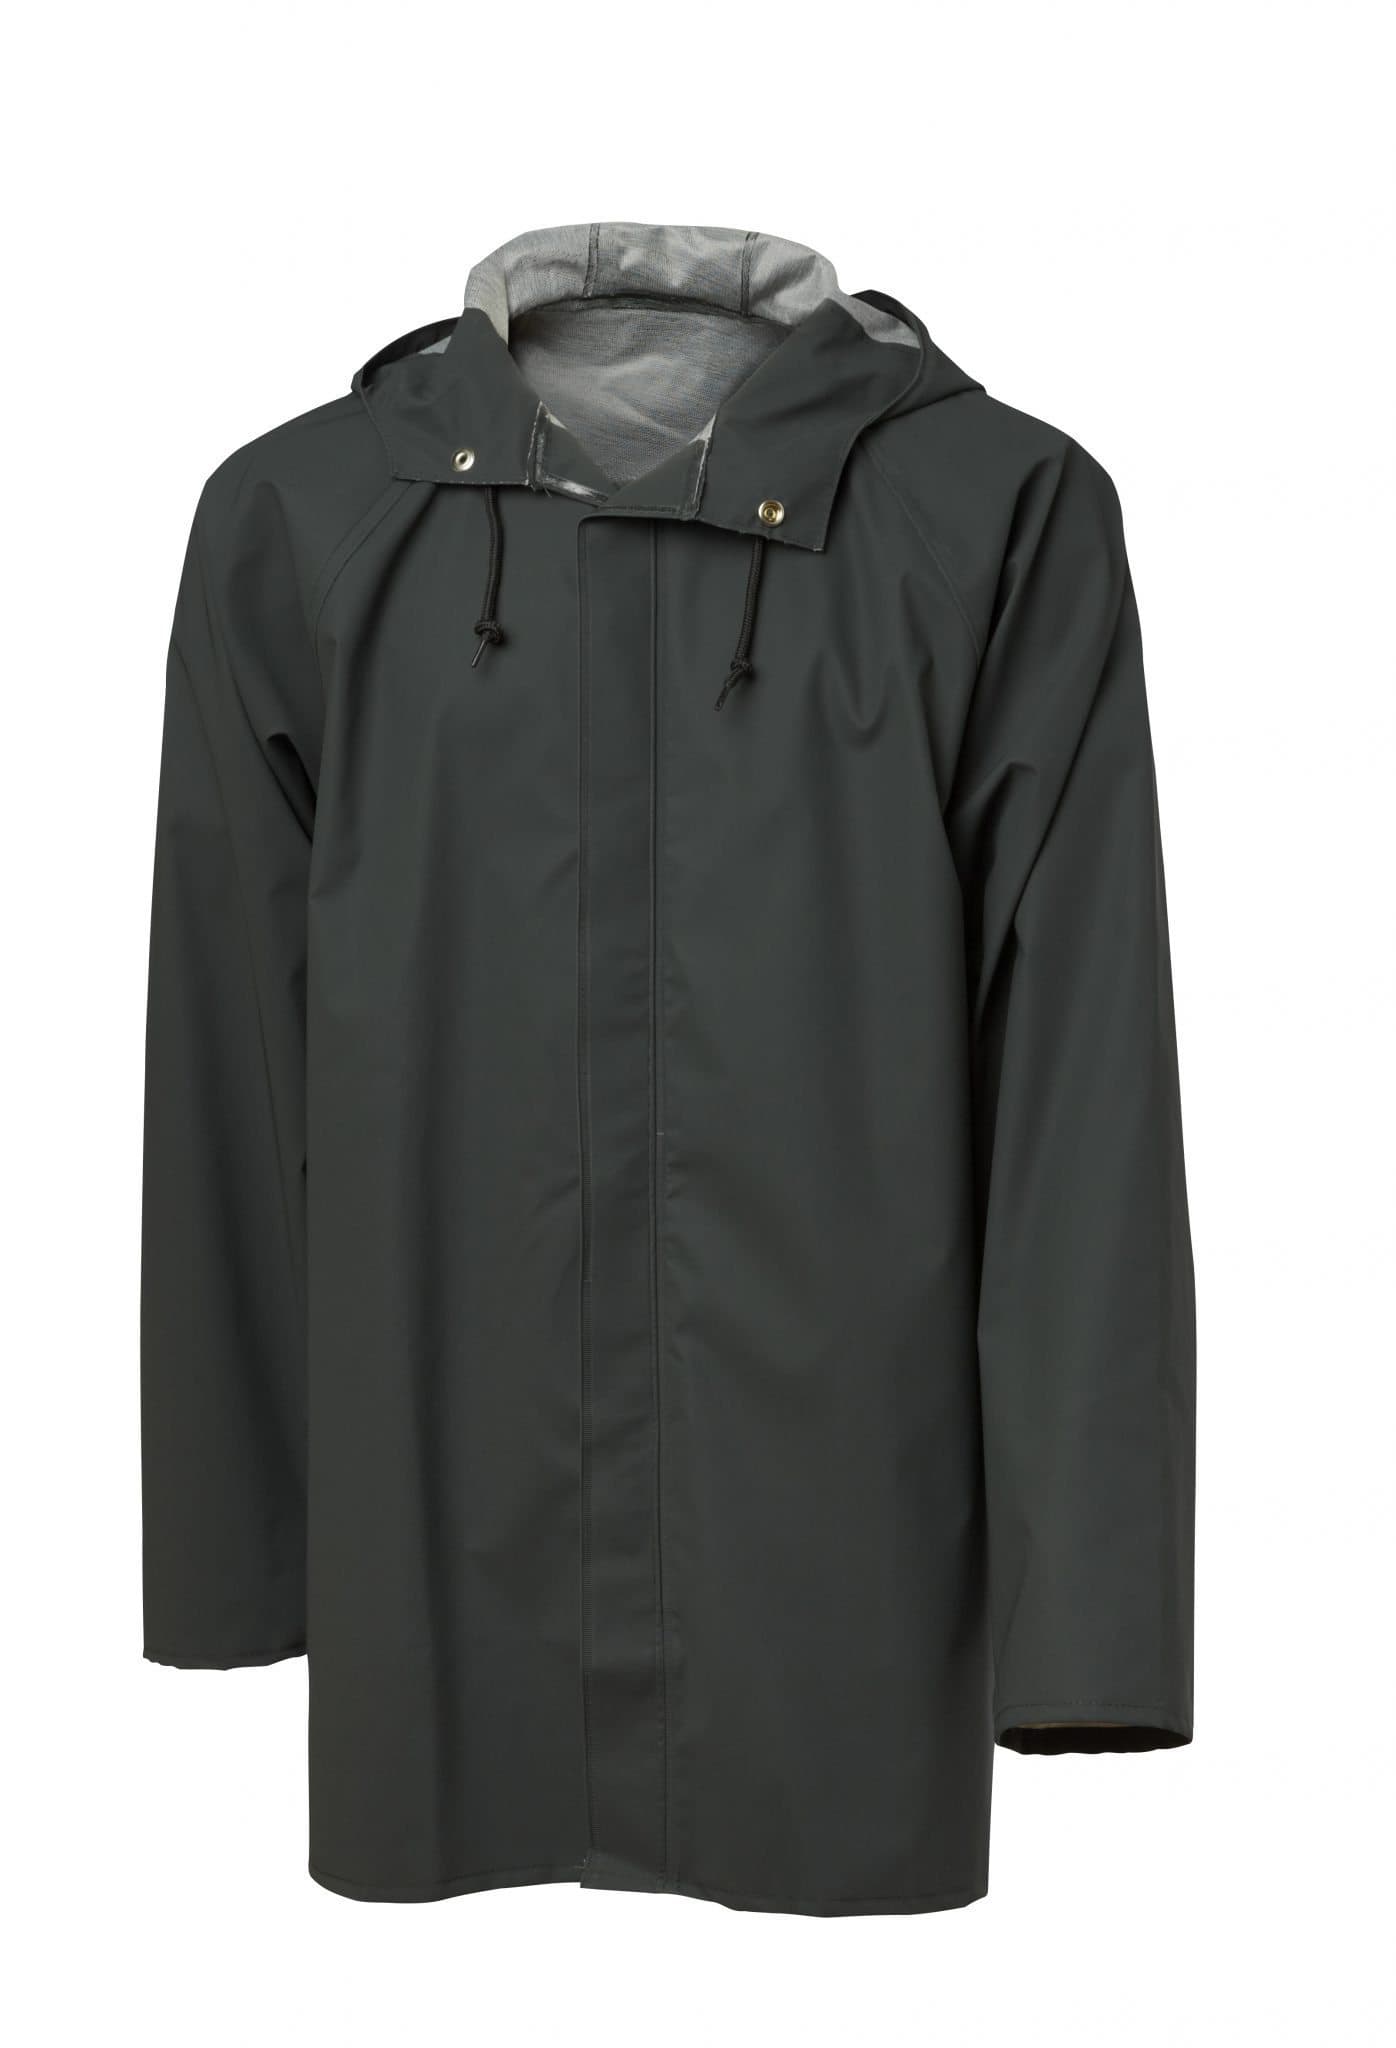 PVC Rain jacket Popular, let, slidstærk og vandtæt - Viking Rubber Co.